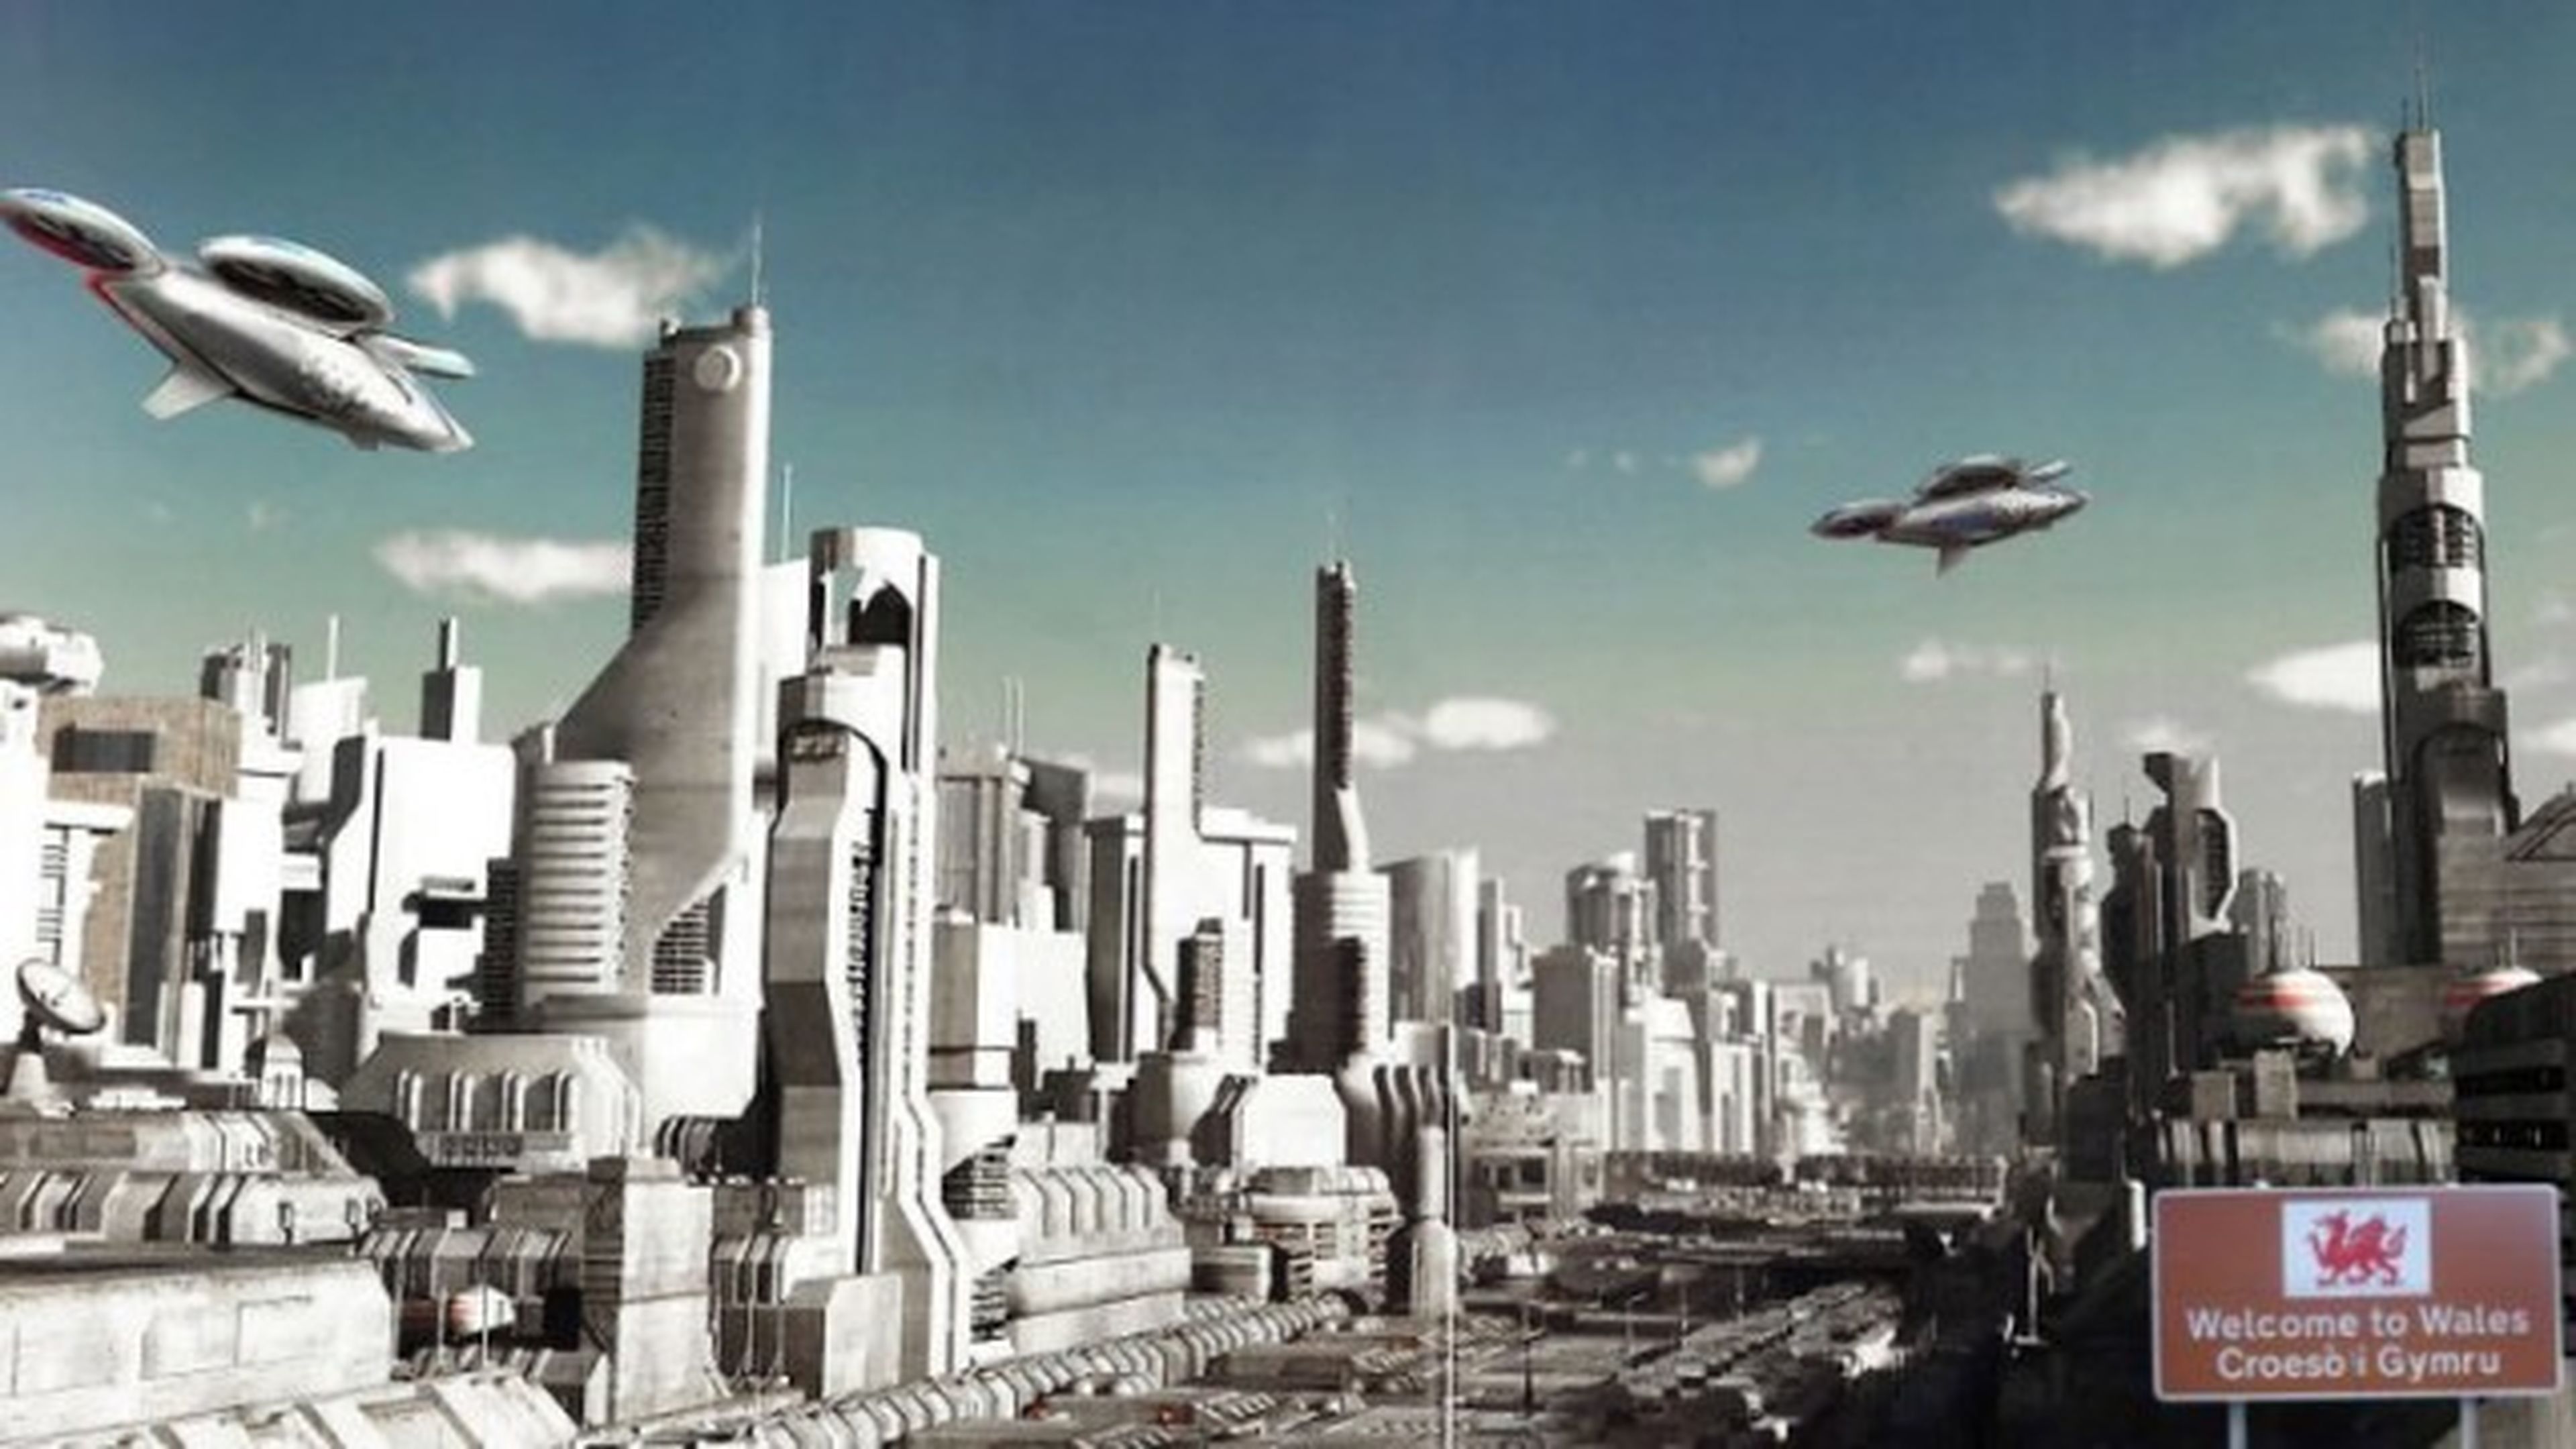 Táxis voladores y túneles futuristas lejos de la realidad